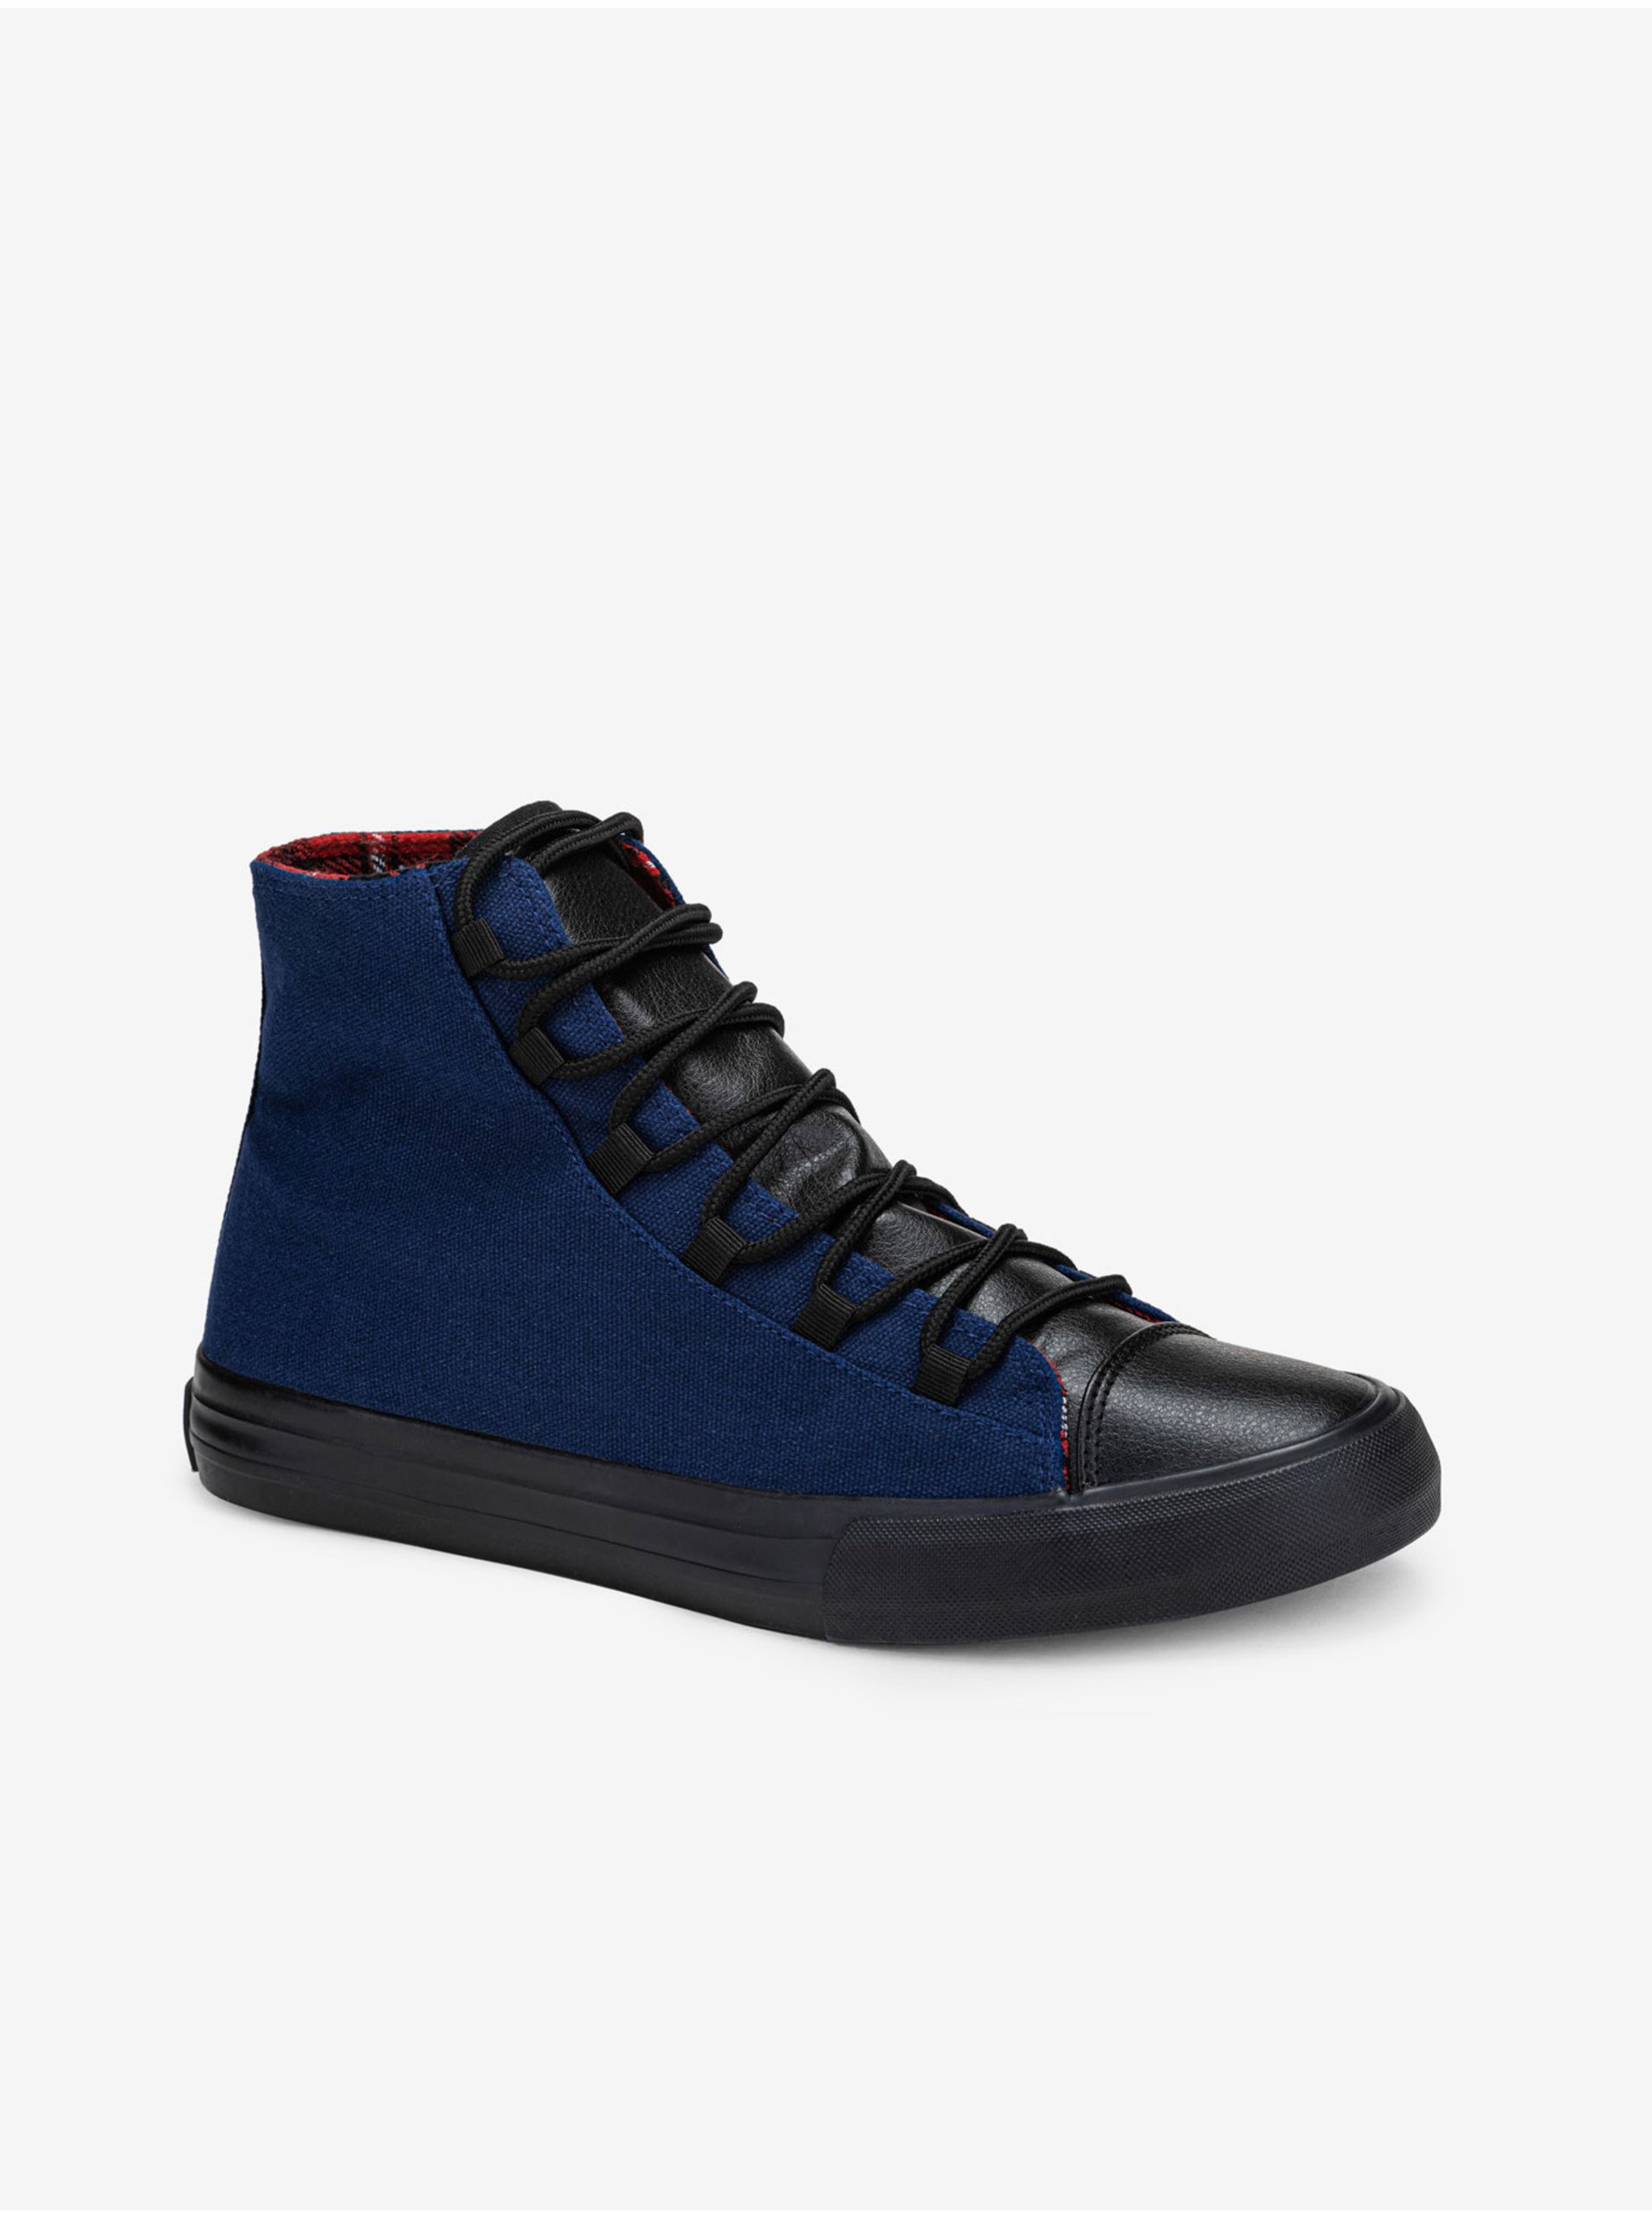 E-shop Černo-modré pánské sneakers boty Ombre Clothing T378